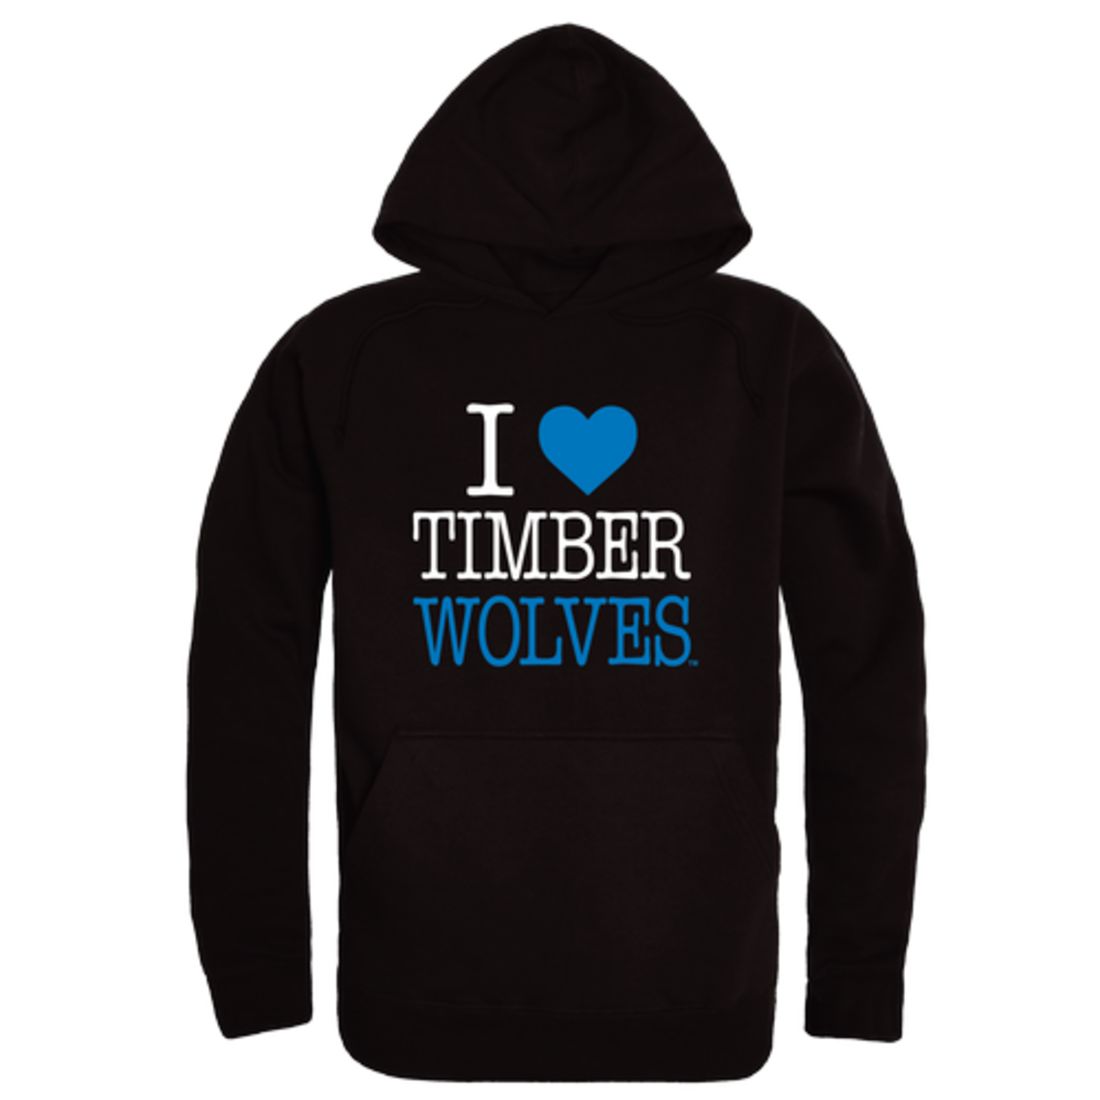 I-Love-Northwood-University-Timberwolves-Fleece-Hoodie-Sweatshirts